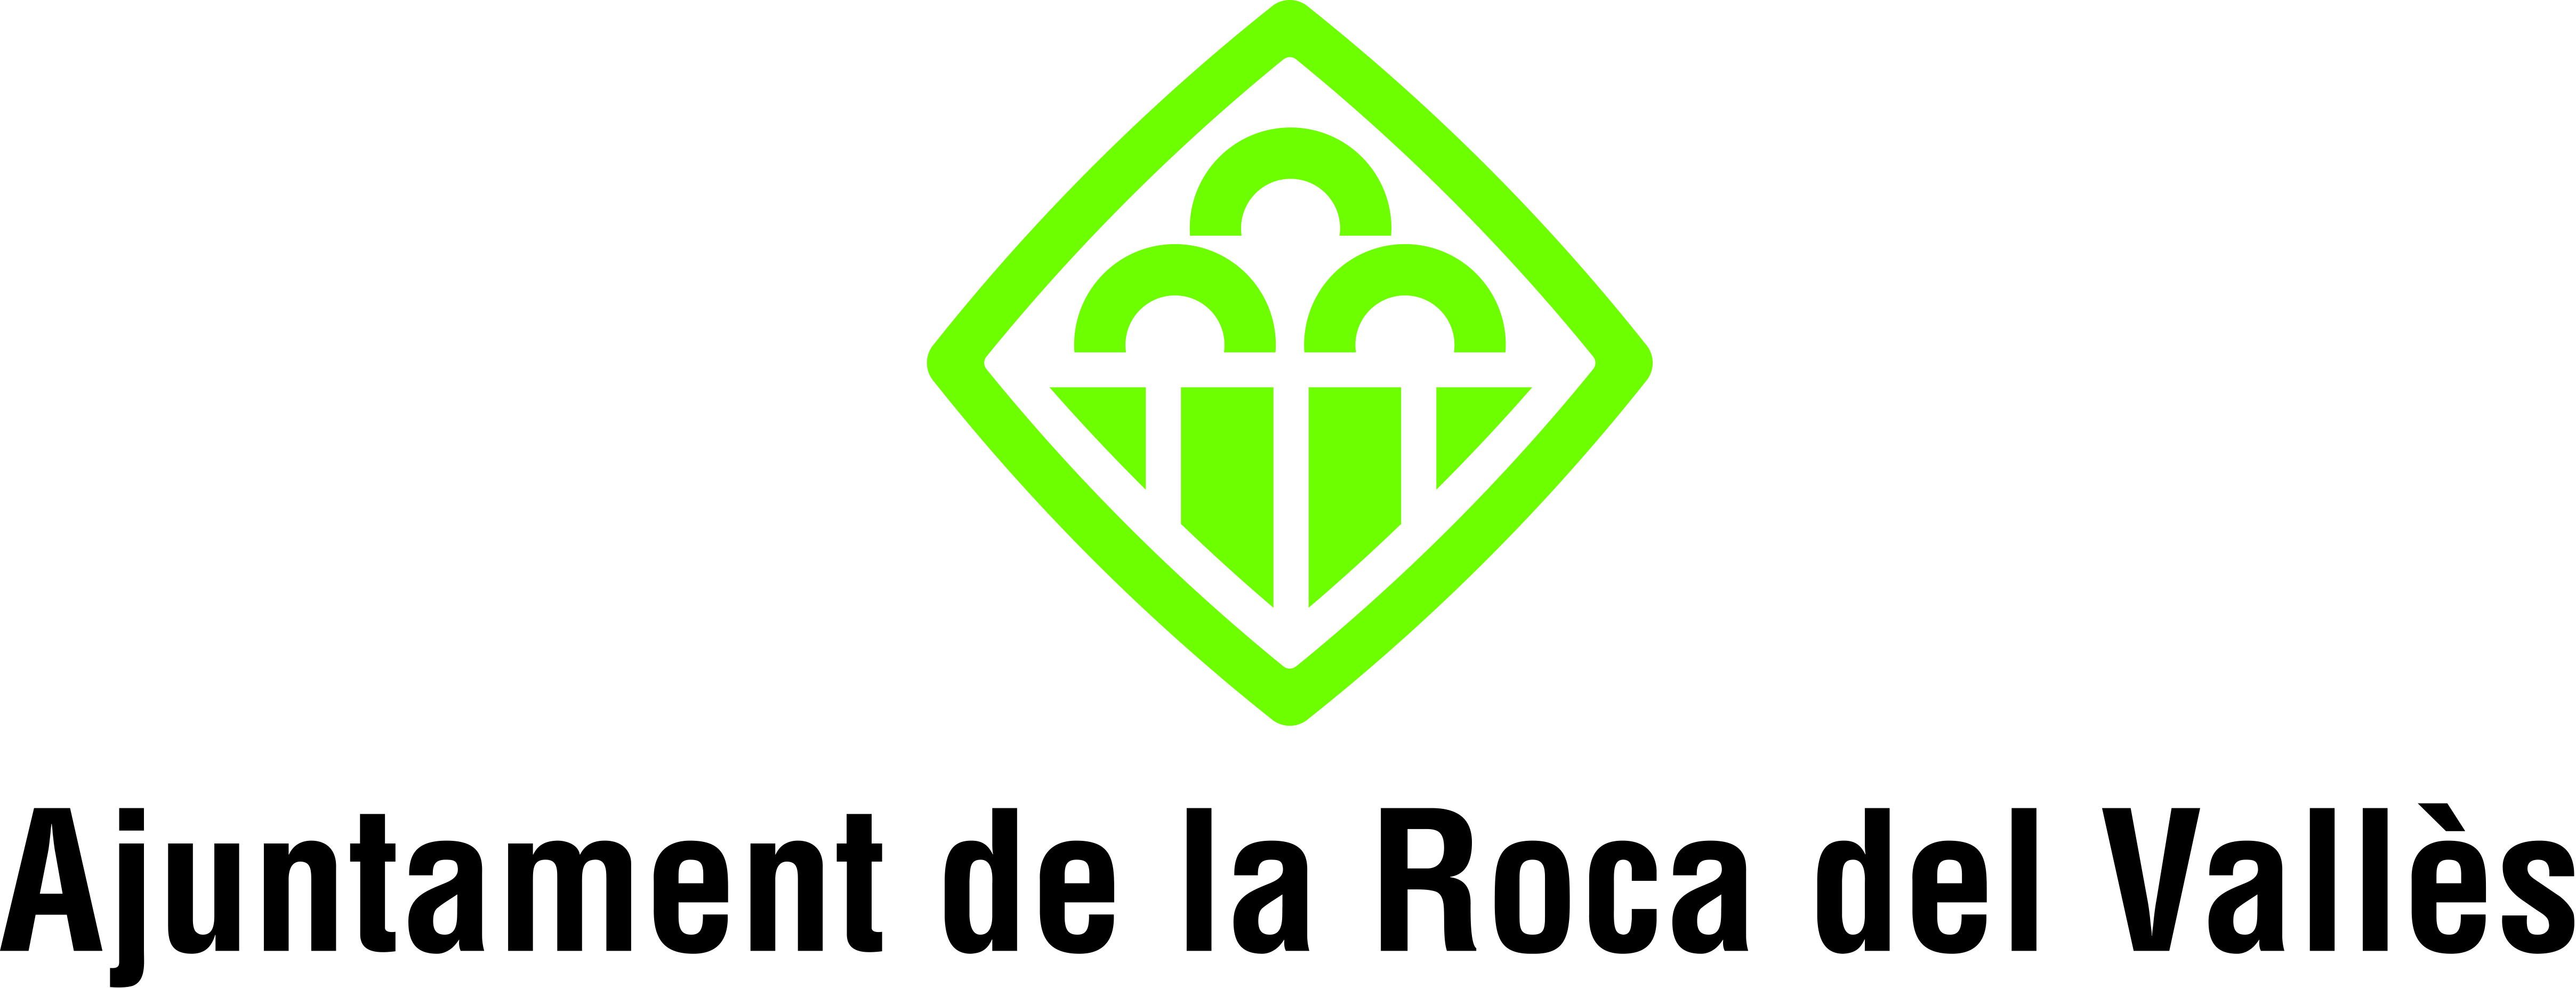 Ajuntament de la Roca del Vallès/Imatge corporativa